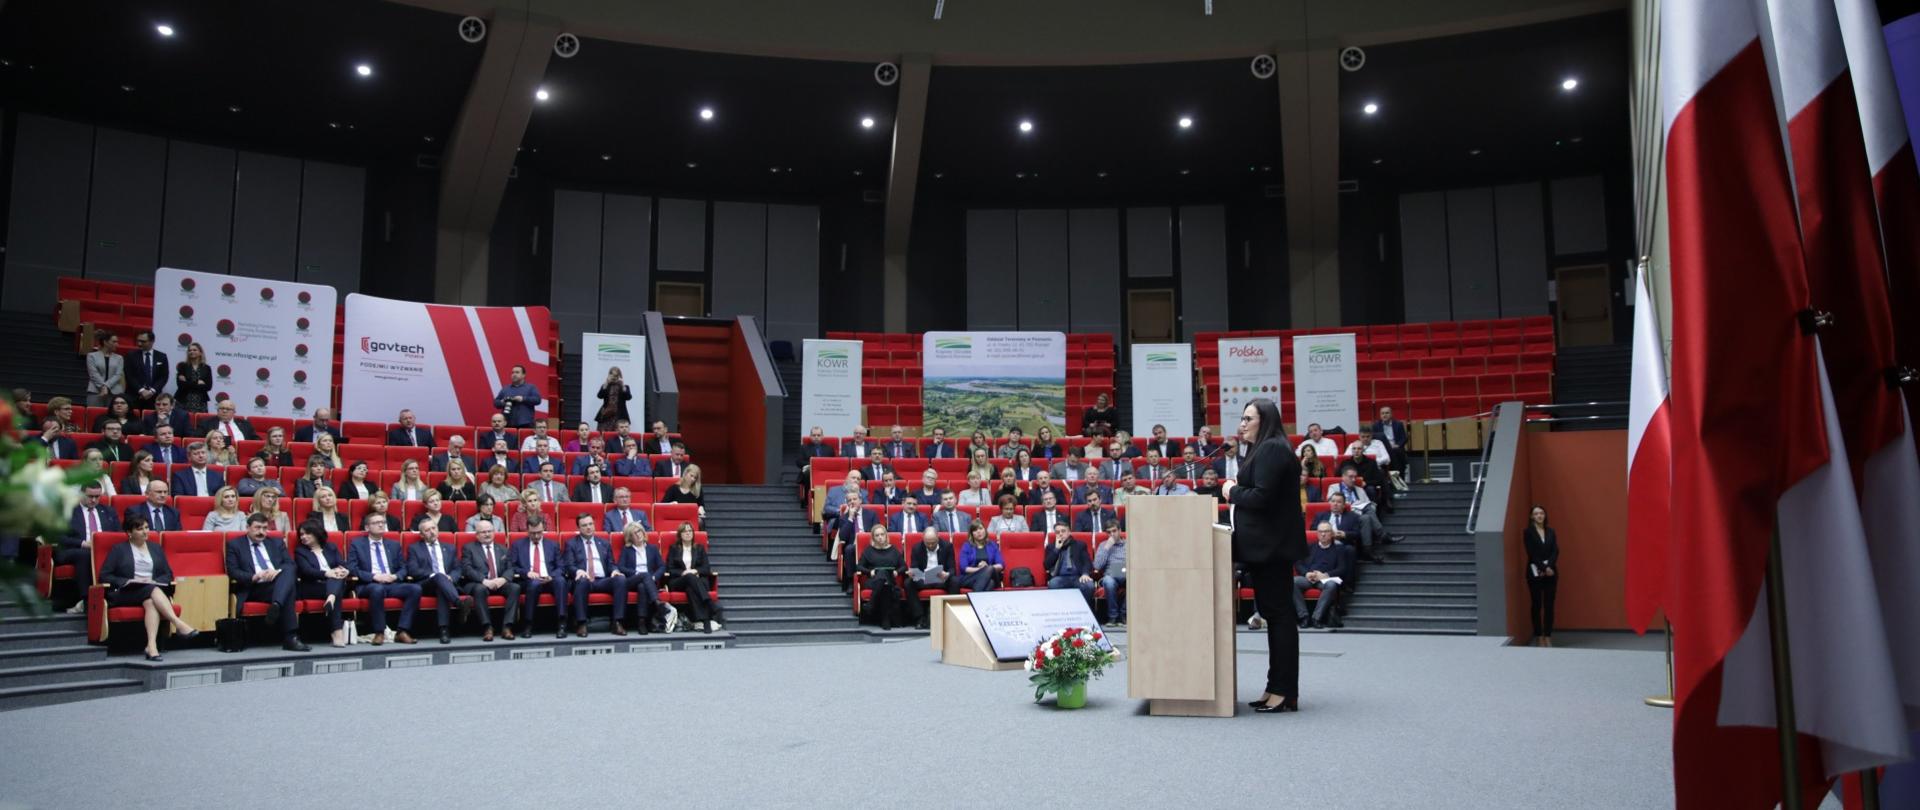 Na zdjęciu aula, wokół której siedzą osoby. Na środku mównica, z której przemawia minister Małgorzata Jarosińska-Jedynak.